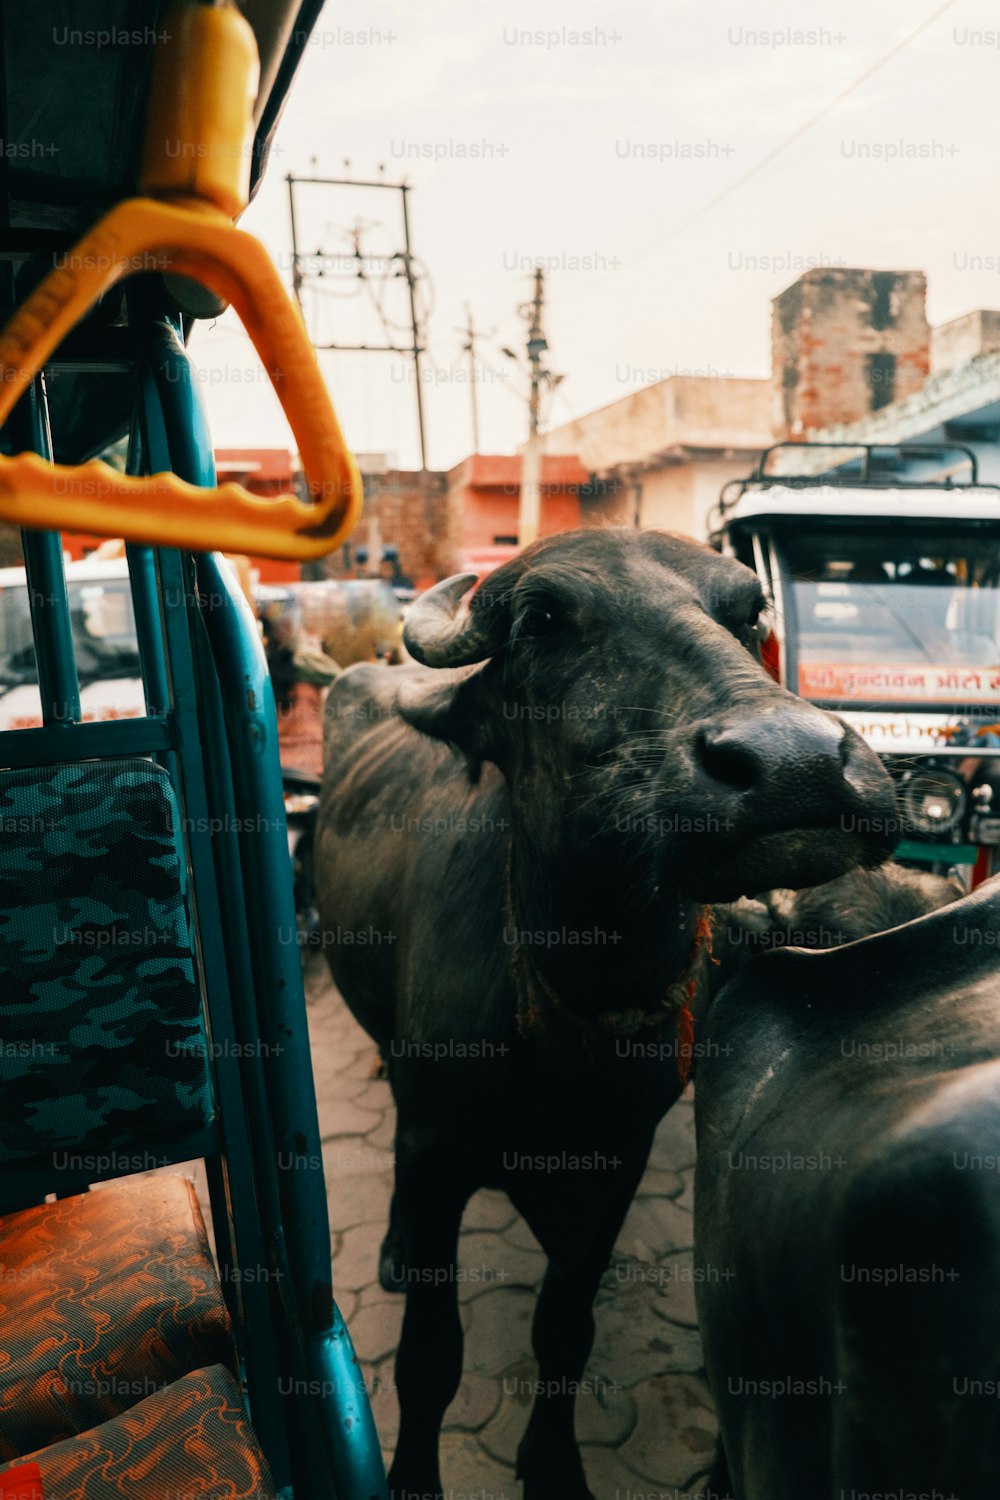 Une vache debout à côté d’un bus dans une rue